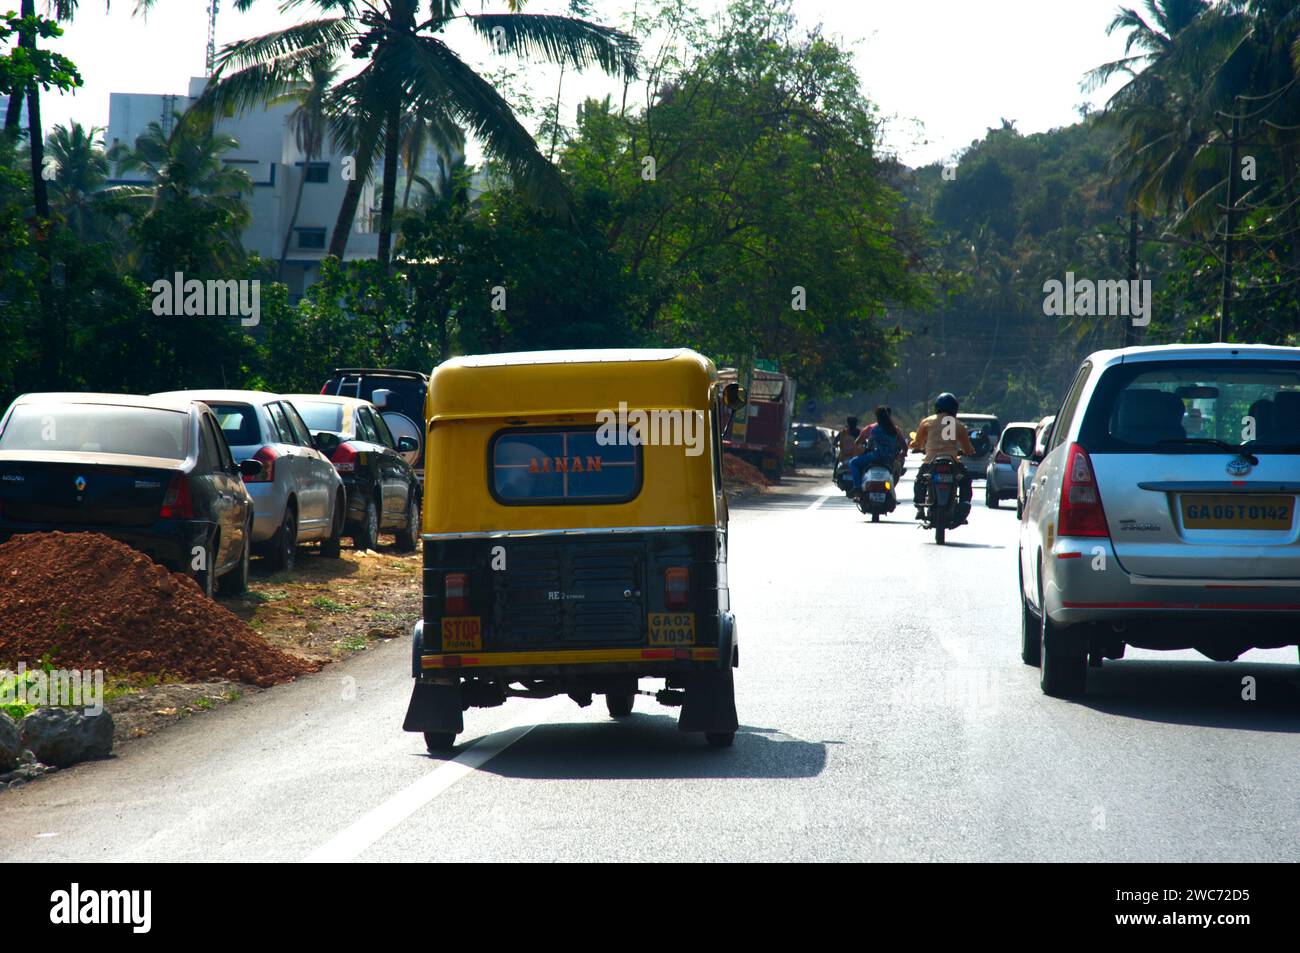 Trafic sur les routes achalandées, Goa, Inde. Banque D'Images